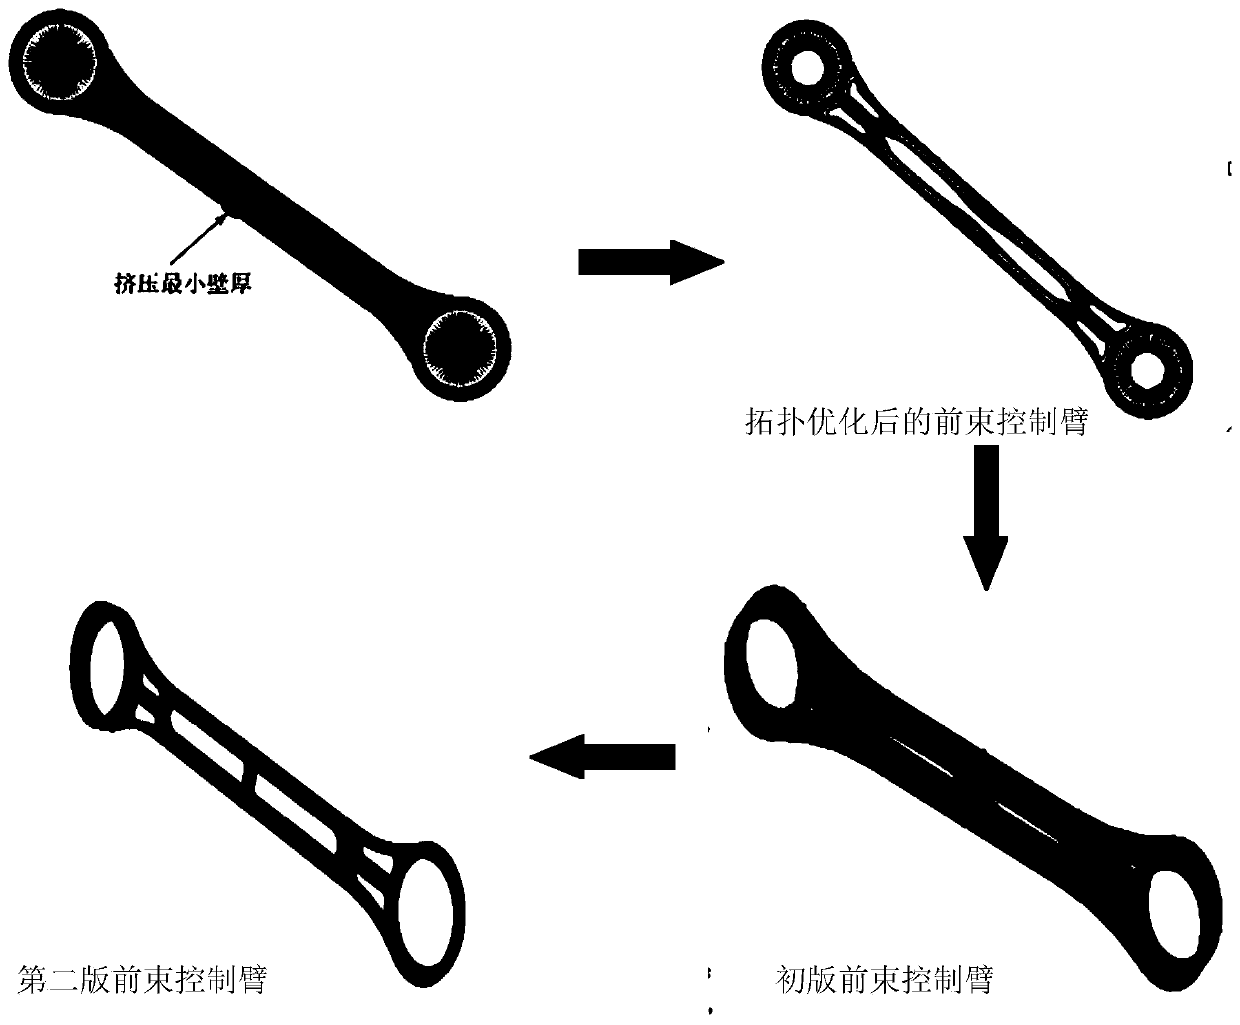 Design method of toe-in control arm